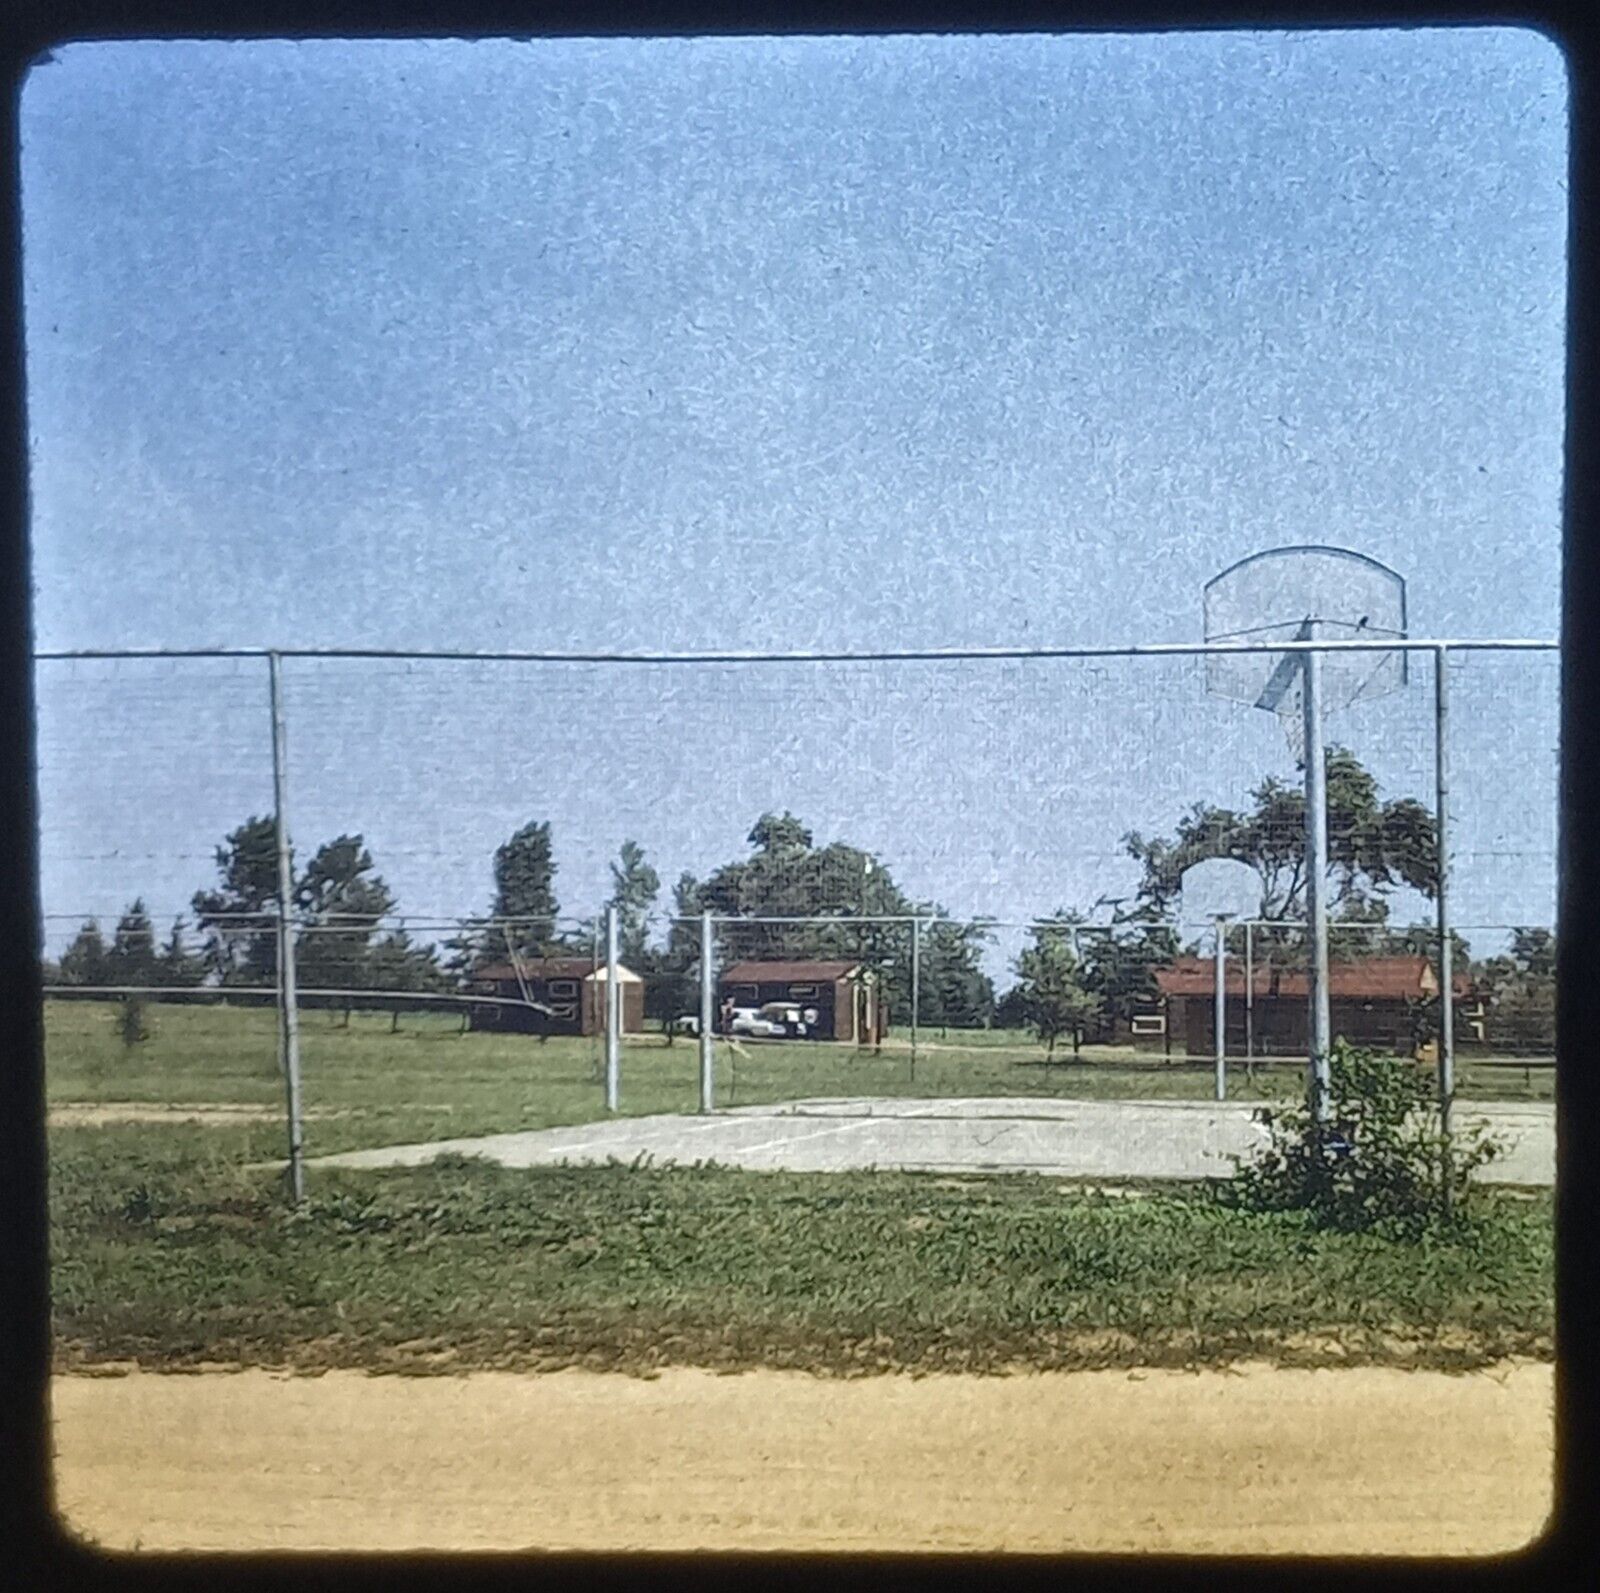 1970s Dirt Road Country Basketball Court Farm Vtg 35mm Photo Slide